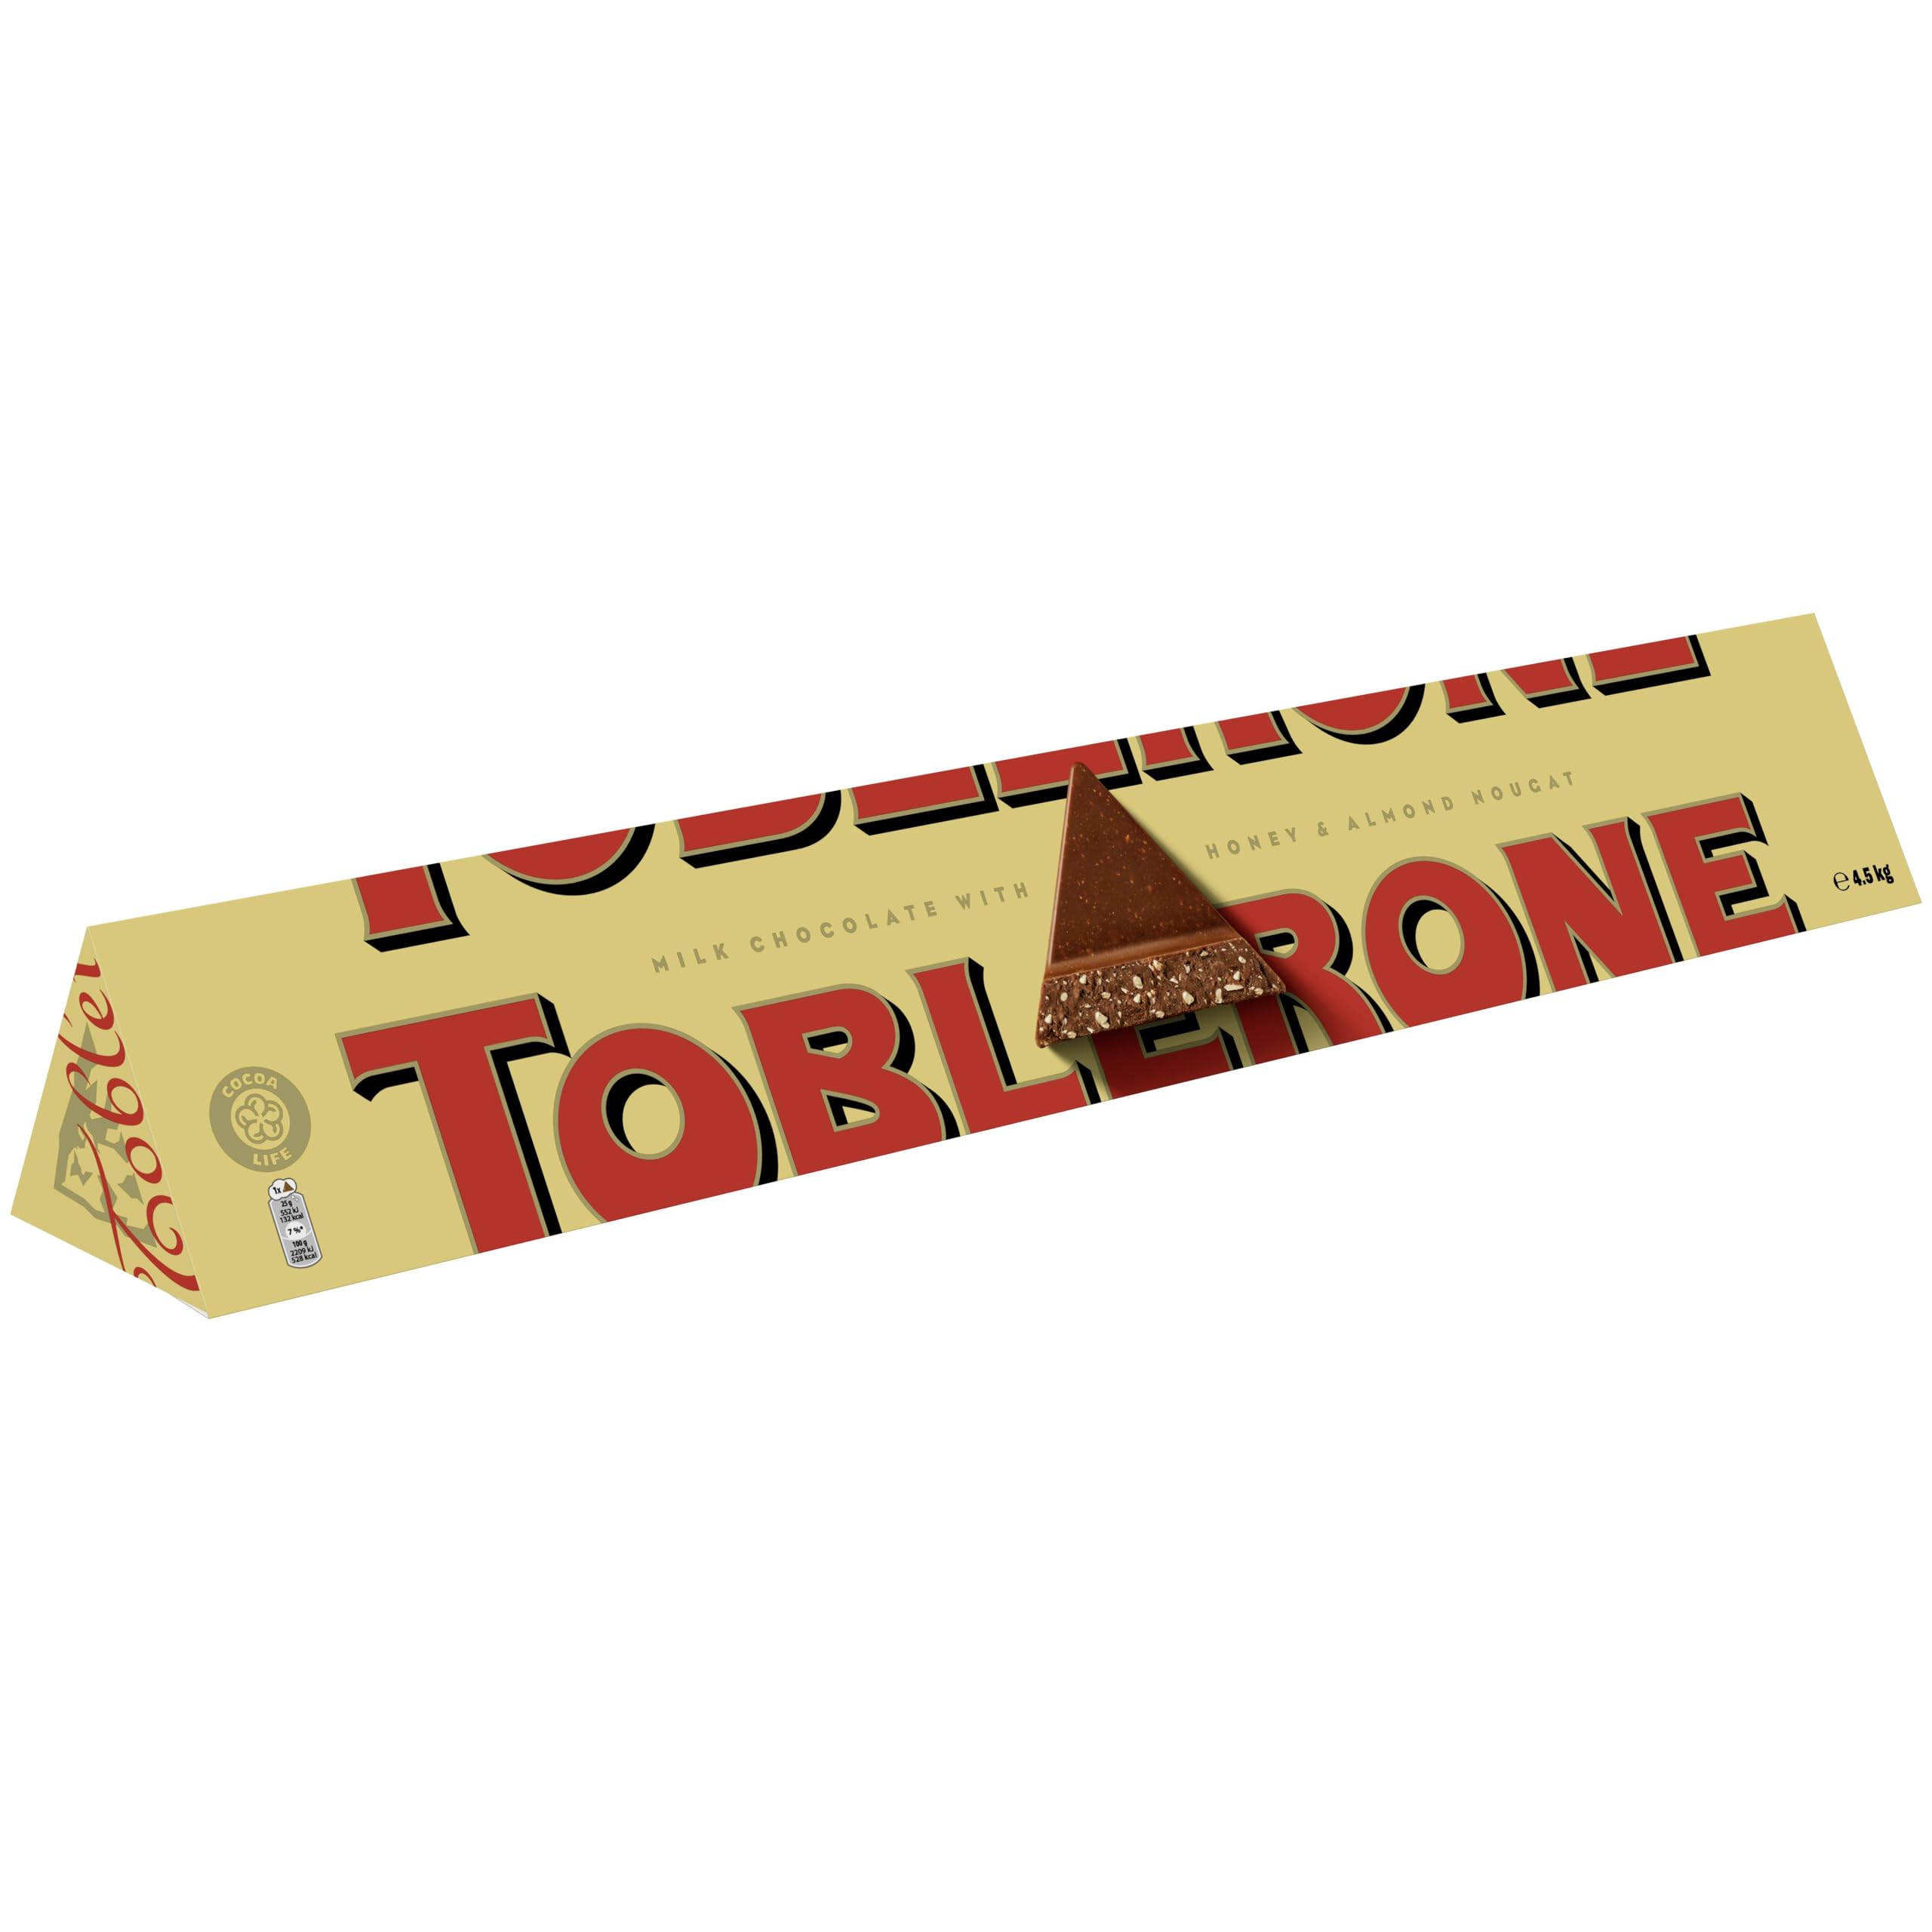 Achat Toblerone Géant – Barre Chocolat au Lait avec Nougat au Miel Et Aux Amandes – Recette Classique – Idée Cadeau Noël – Chocolat à Offrir – 1 x 4,5 kg MEkgAW9Bt en solde